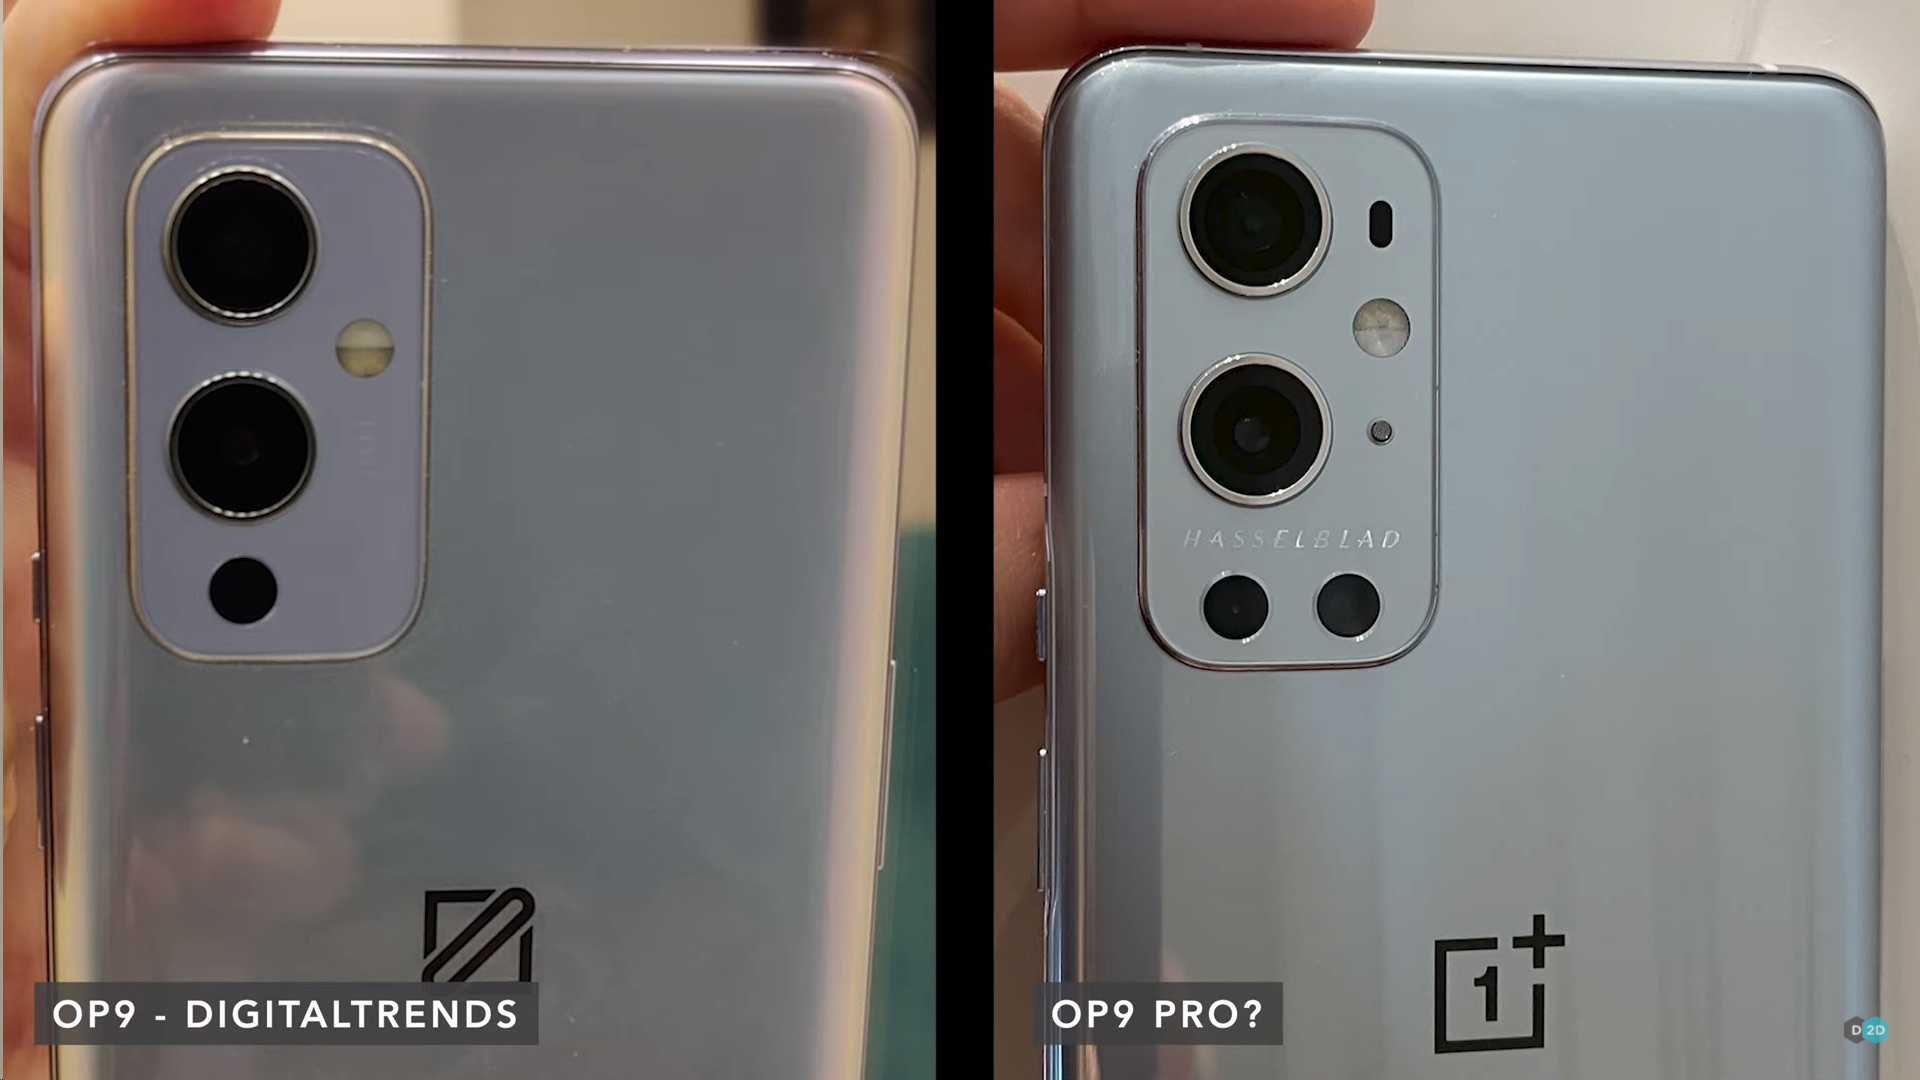  Живые фото OnePlus 9 Pro с камерой Hasselblad Другие устройства  - oneplus_9_pro_s_kameroj_hasselblad_vpervye_na_zhivyh_foto_picture6_0